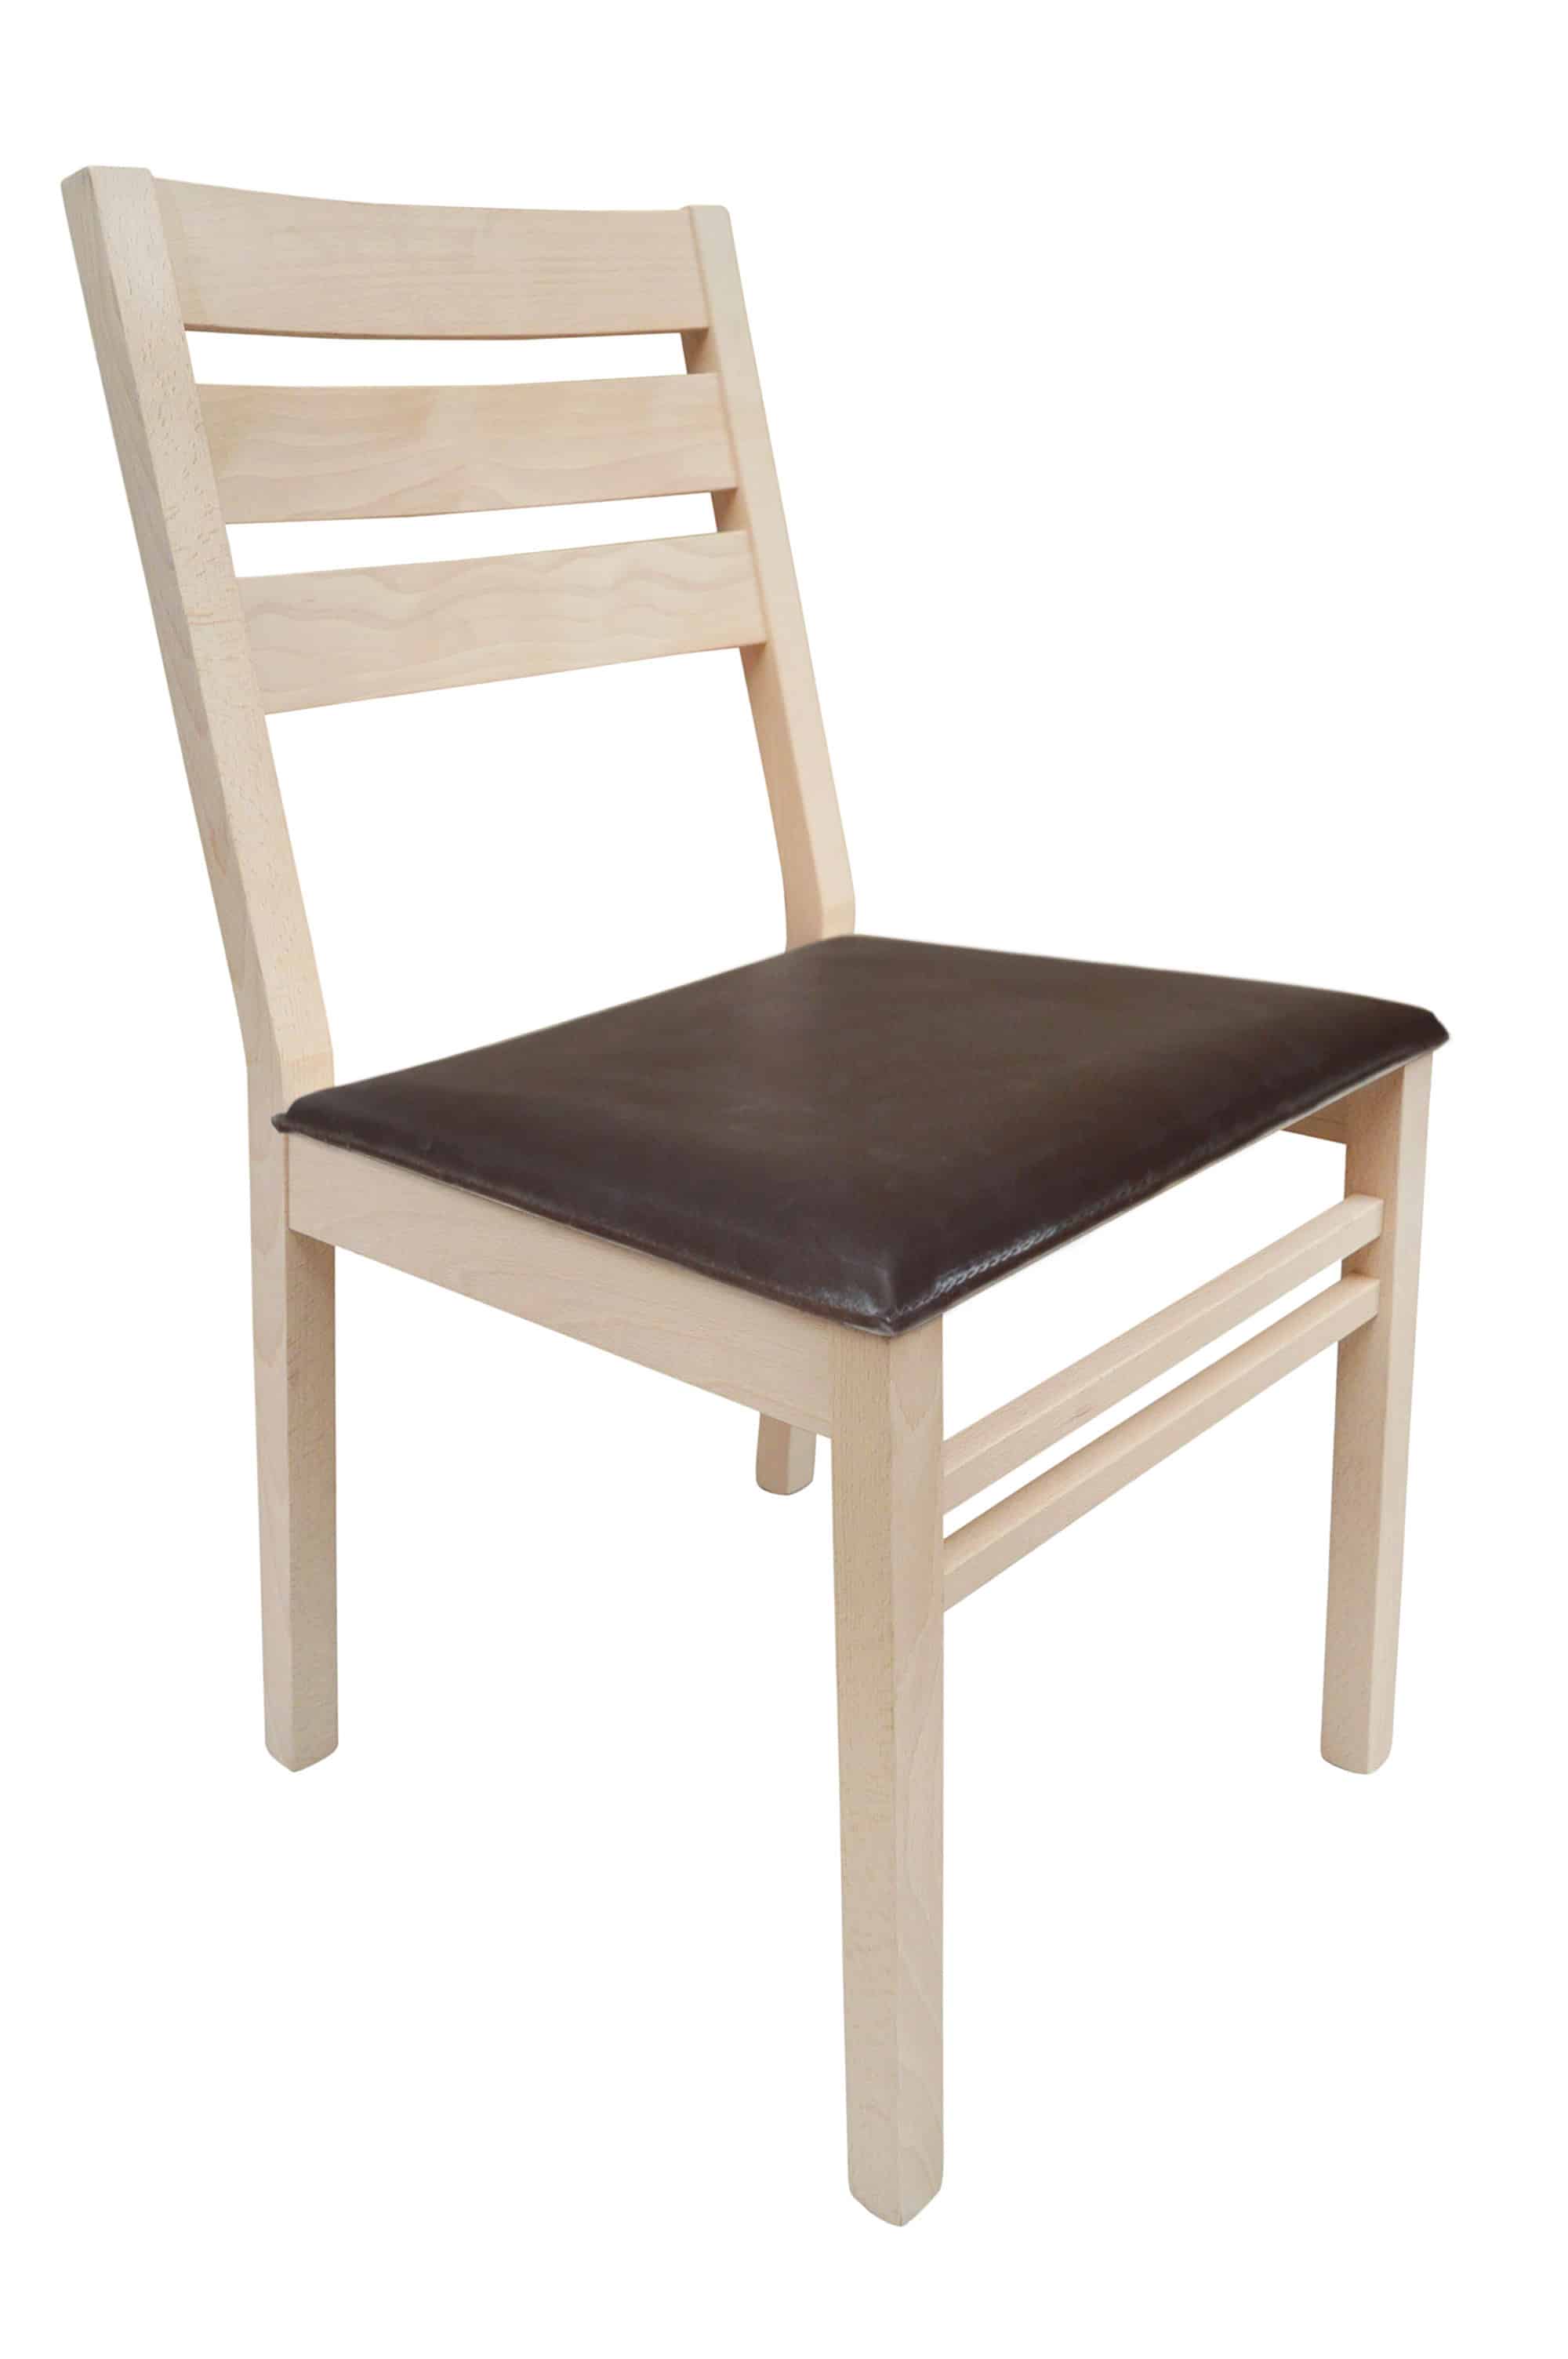 Silla de madera modelo C2 tapizado marrón – Muebles Inac